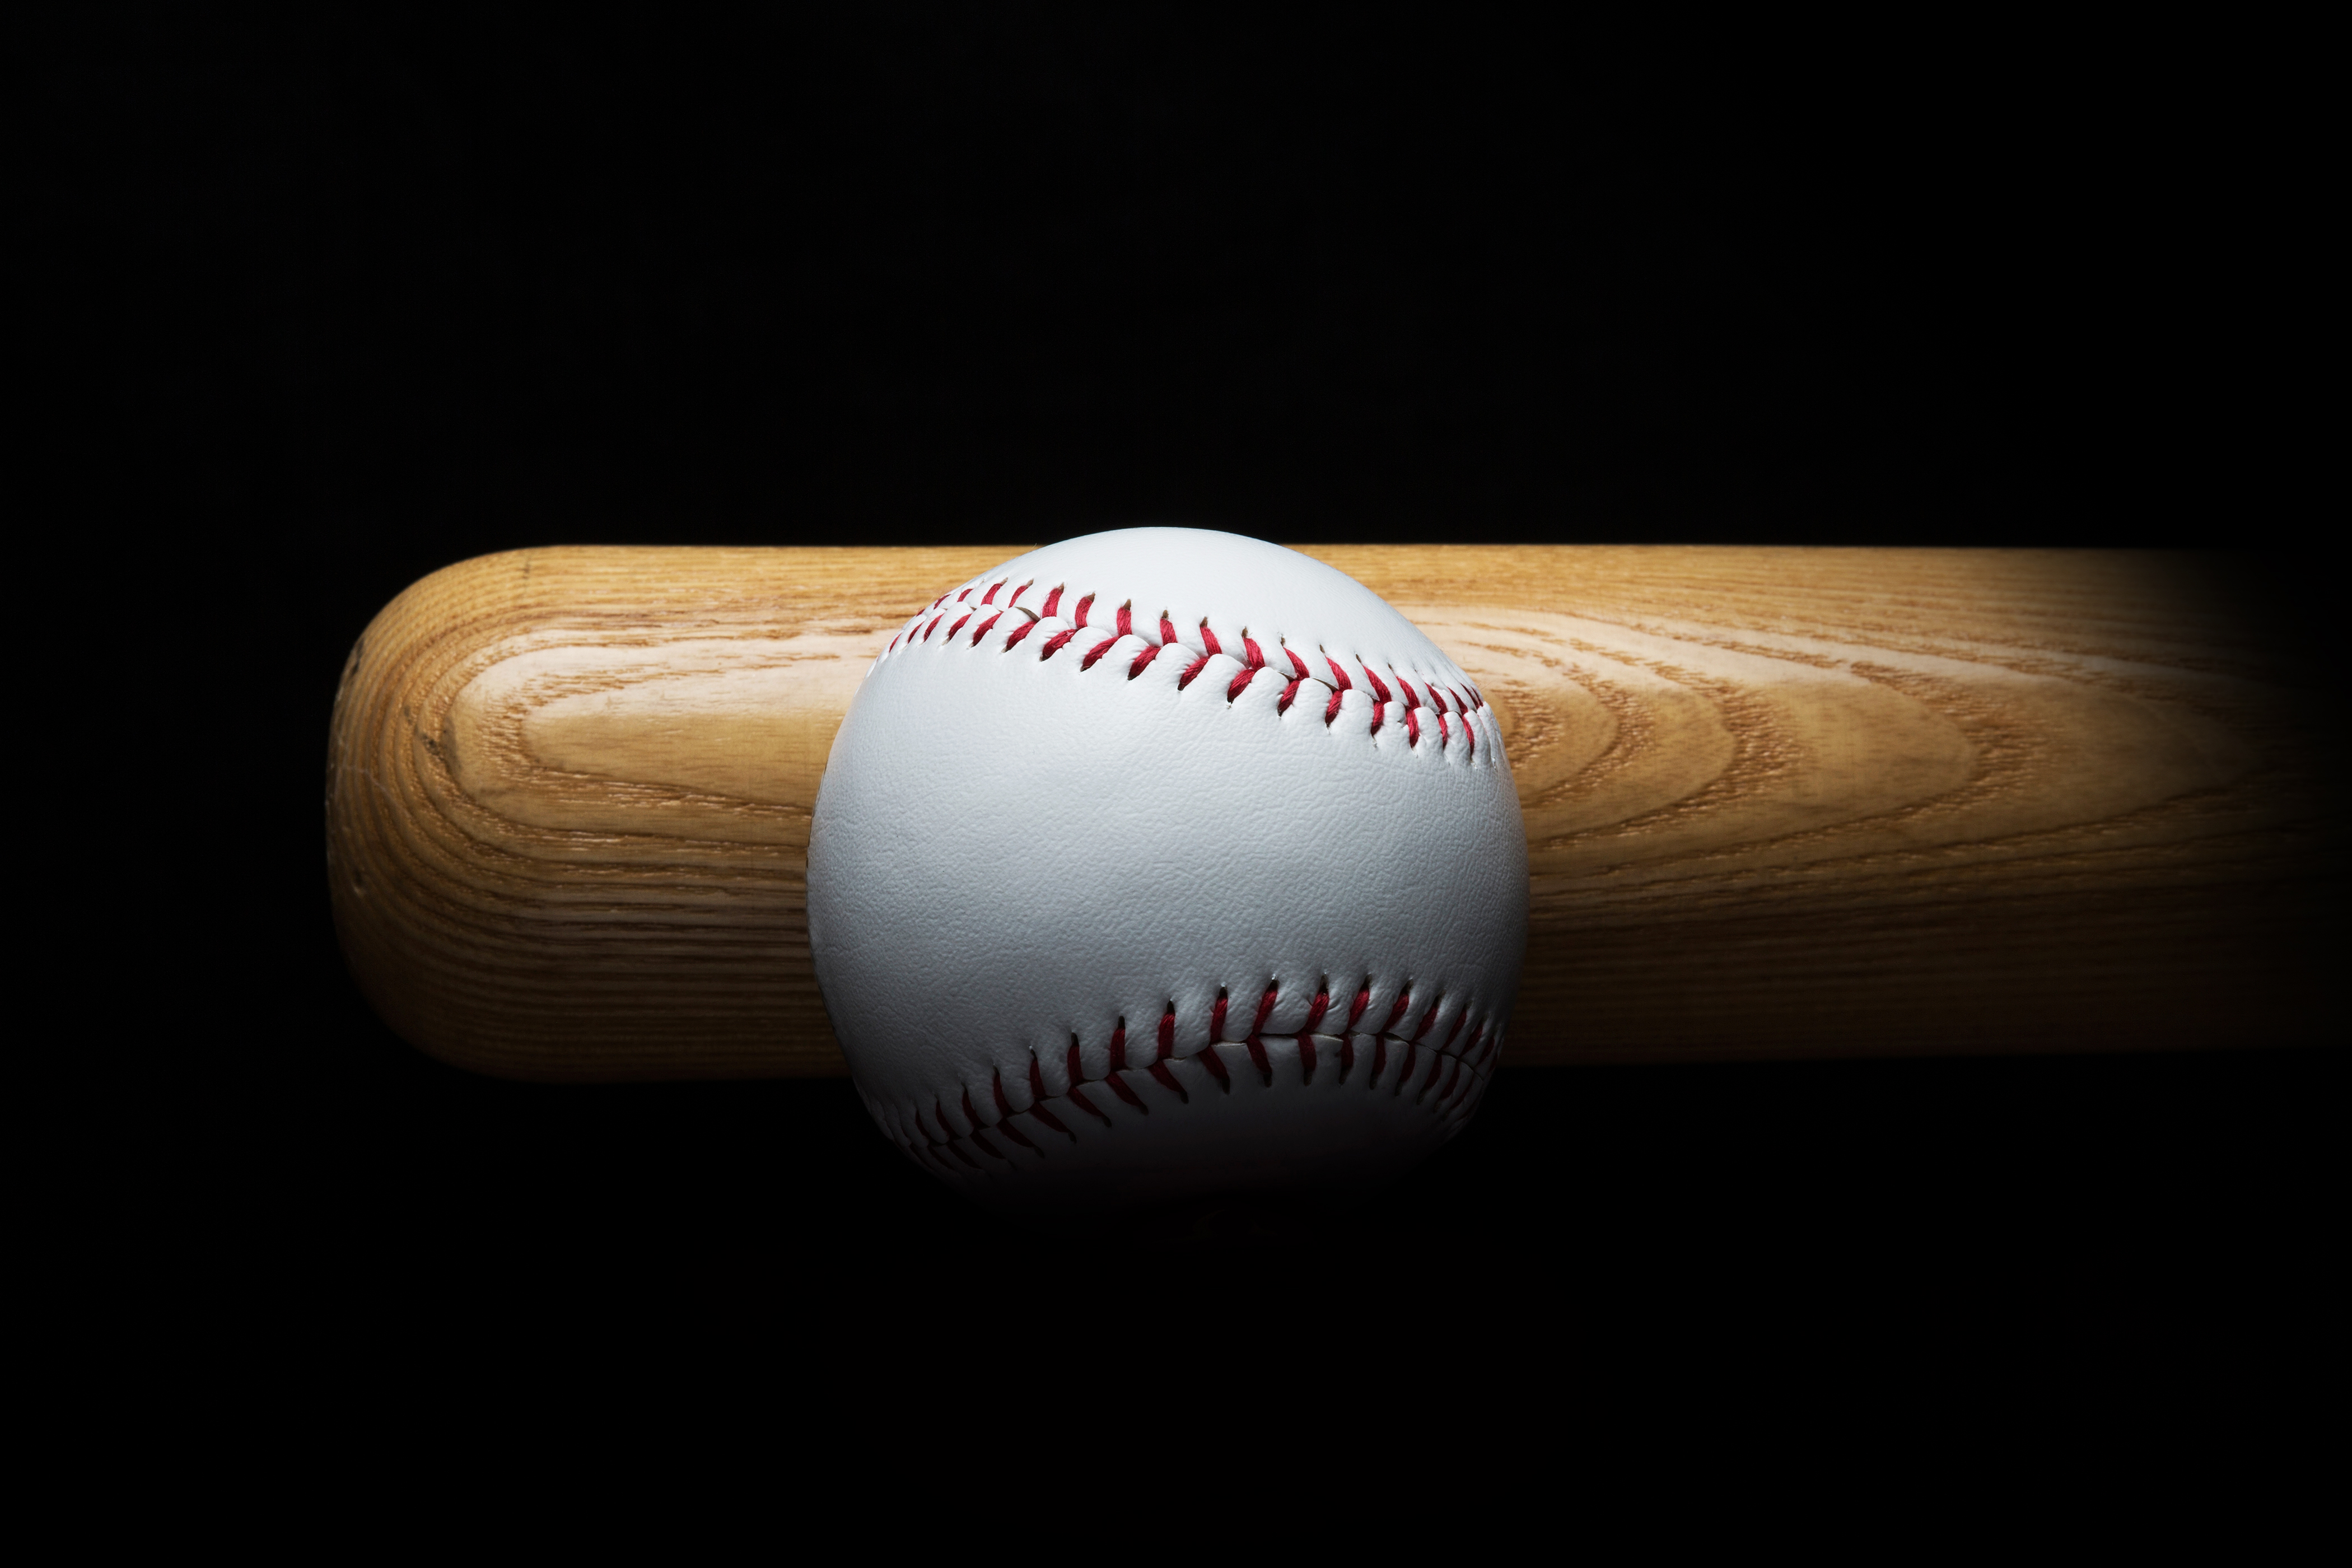 Baseball and bat on black background